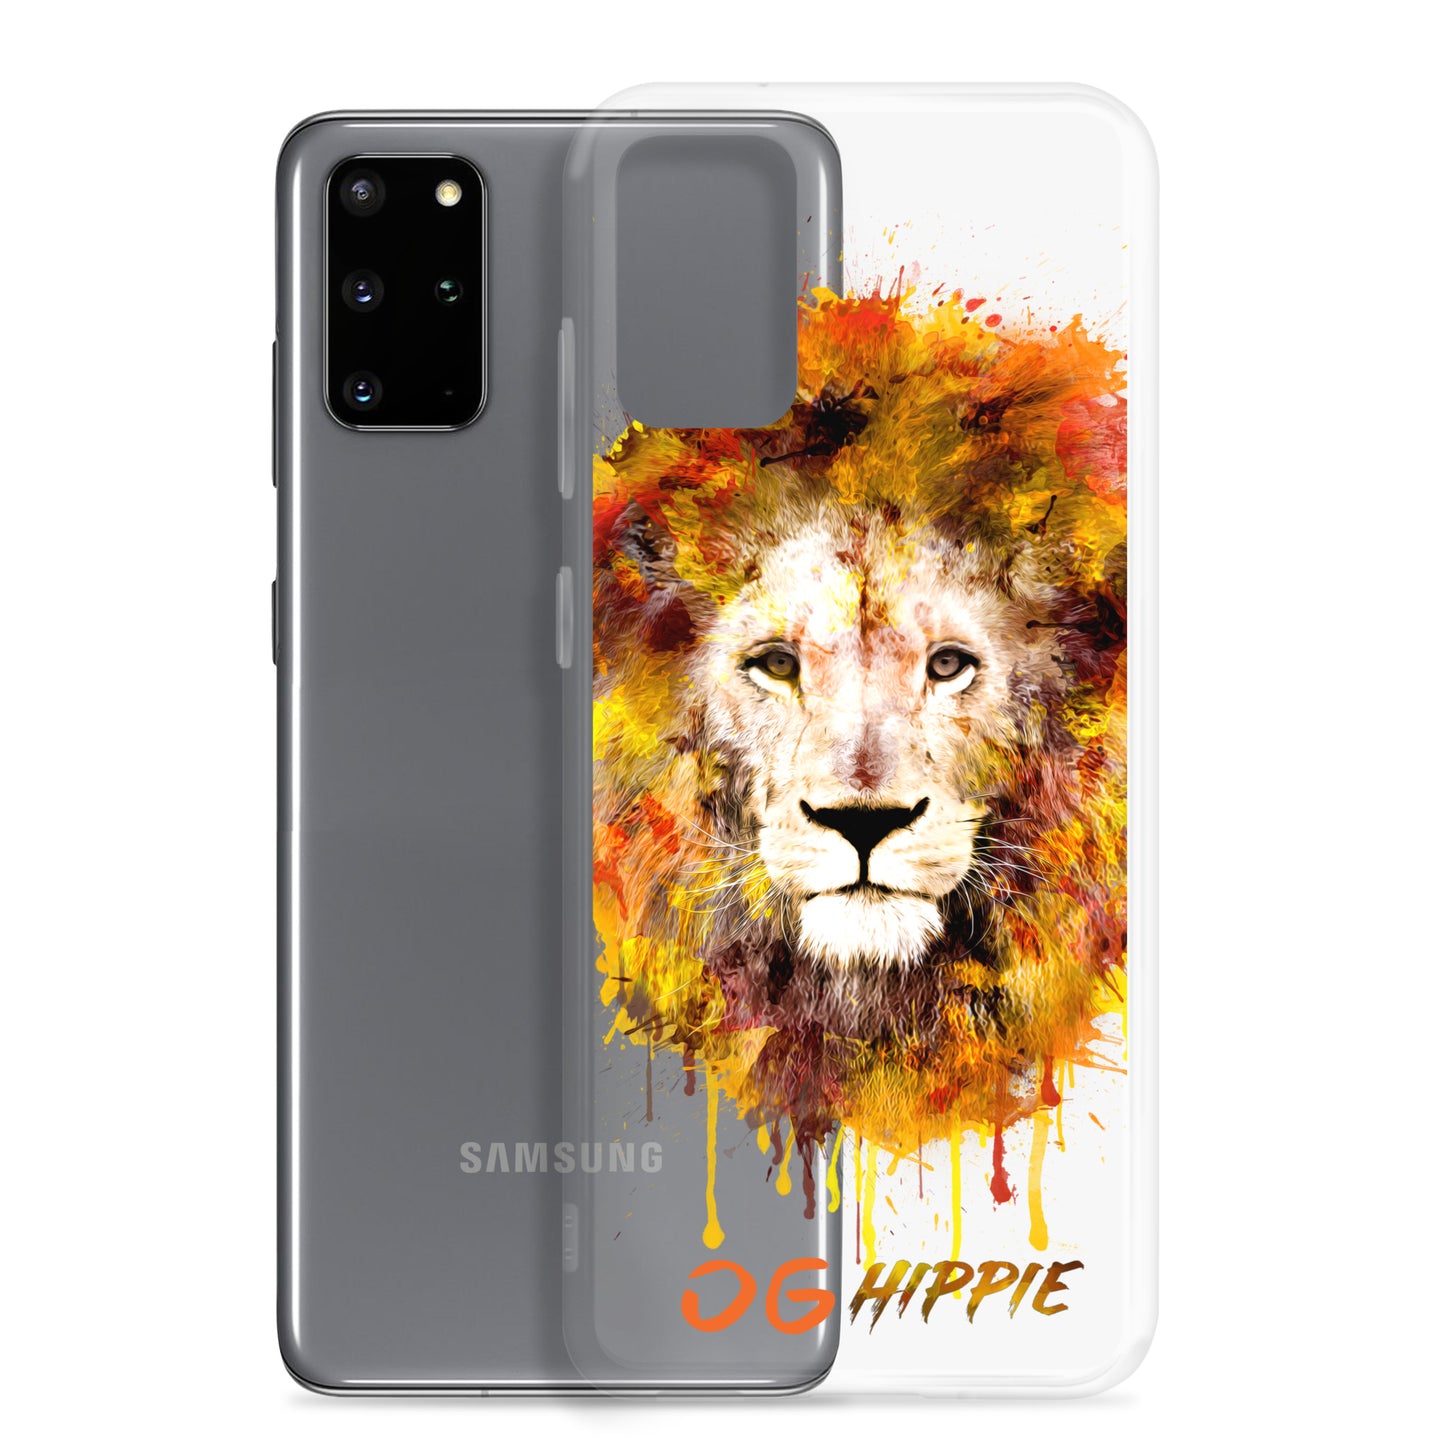 Clear Samsung Case - OG Hippie (orange)